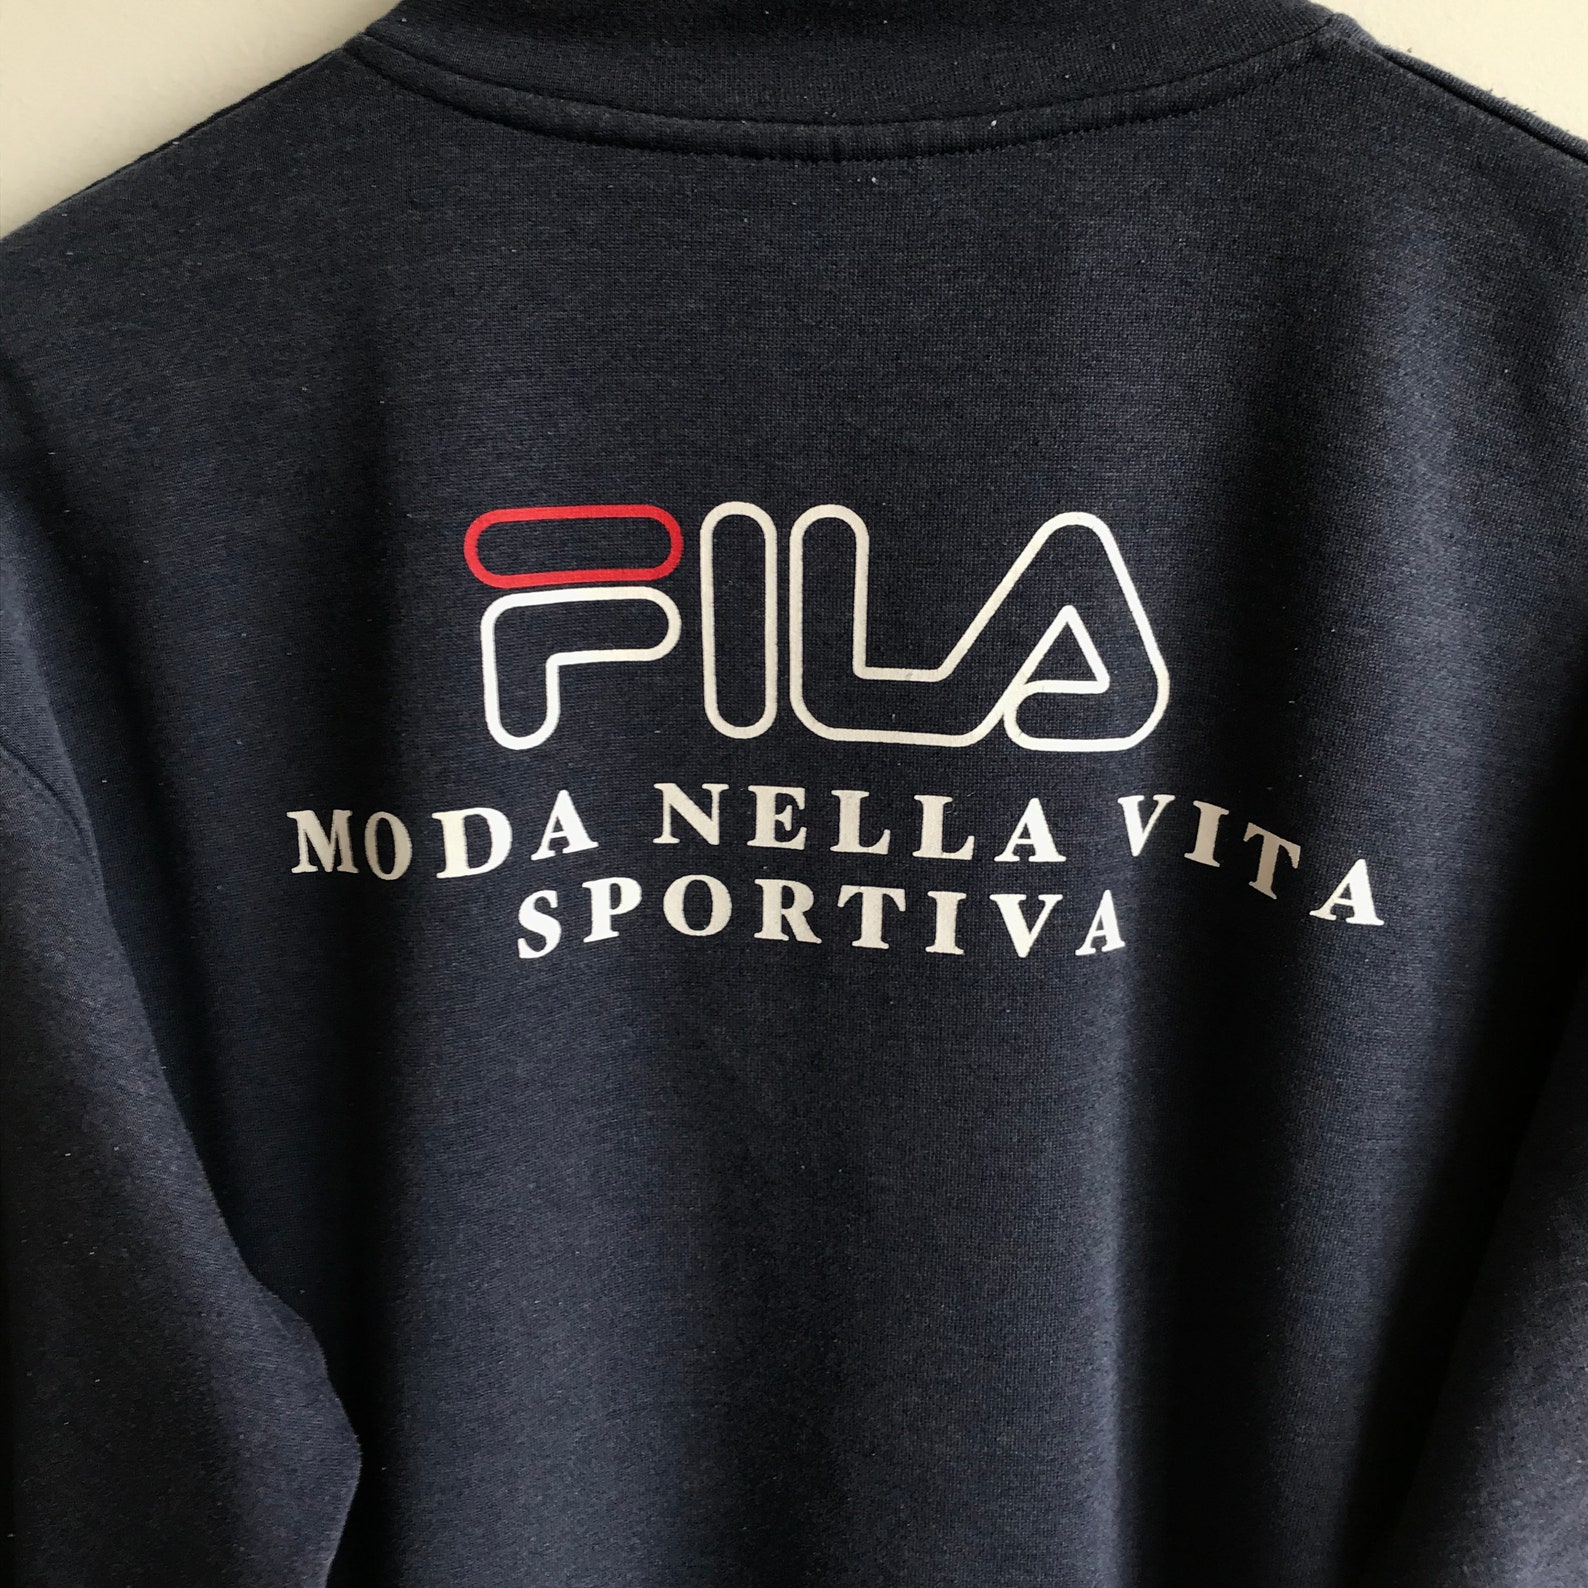 Vintage 90s Fila Moda Nella Vita Sportiva Spellout Logo Print - Etsy